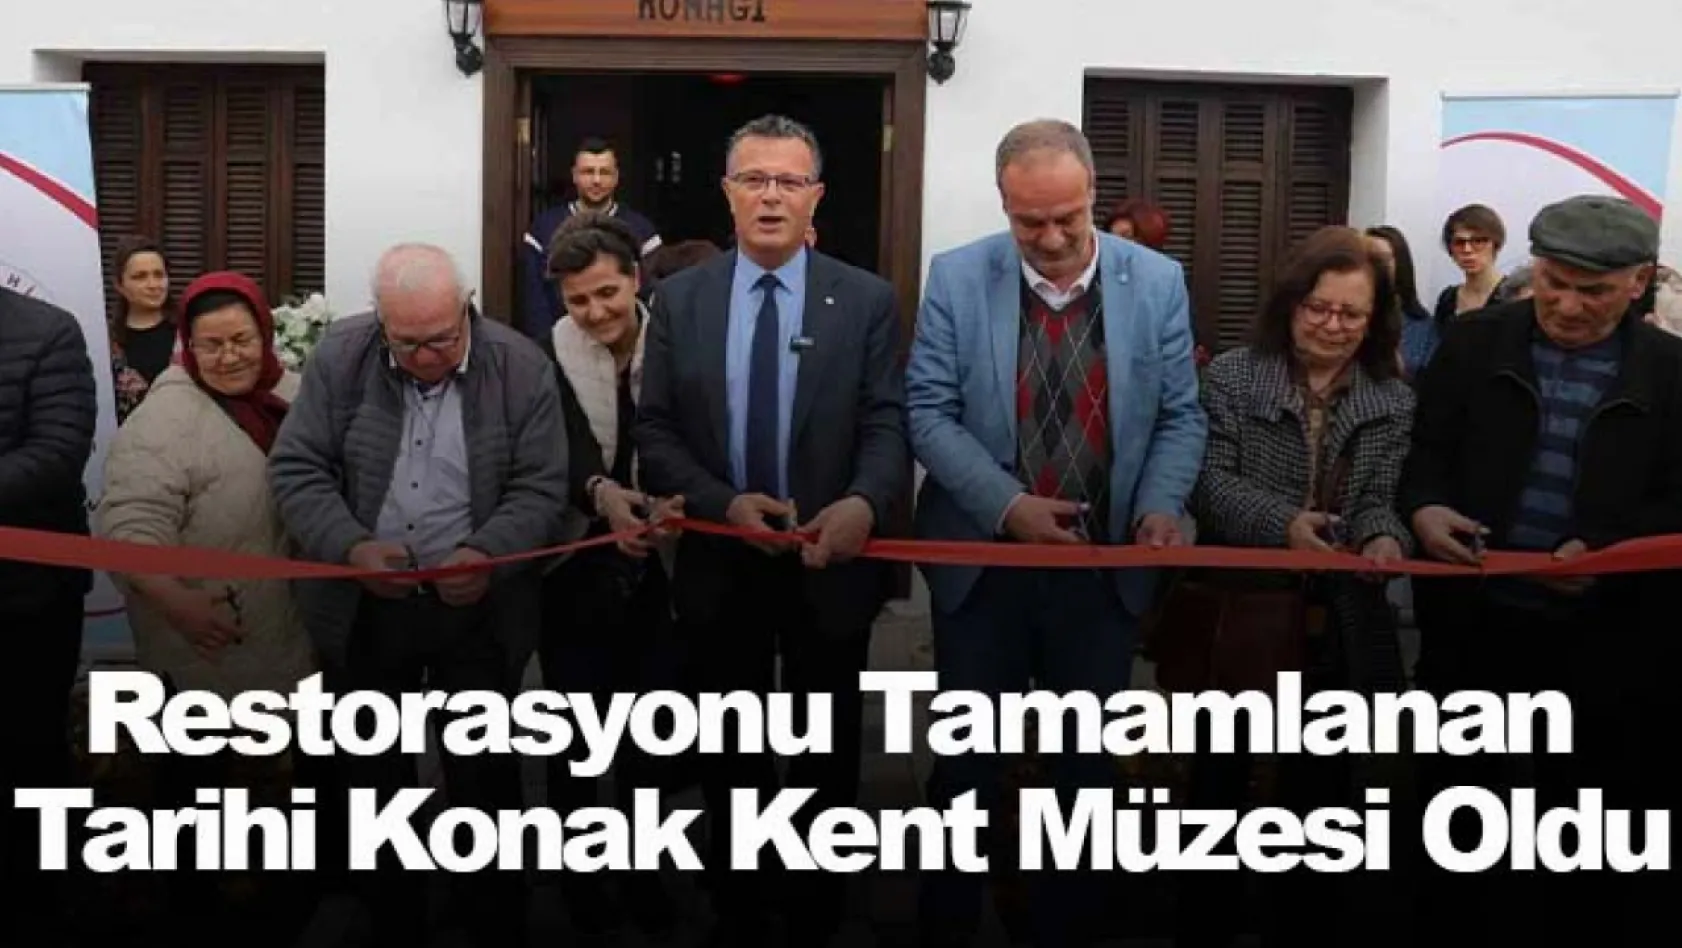 Alaşehir'de Restorasyonu tamamlanan tarihi konak Kent Müzesi oldu